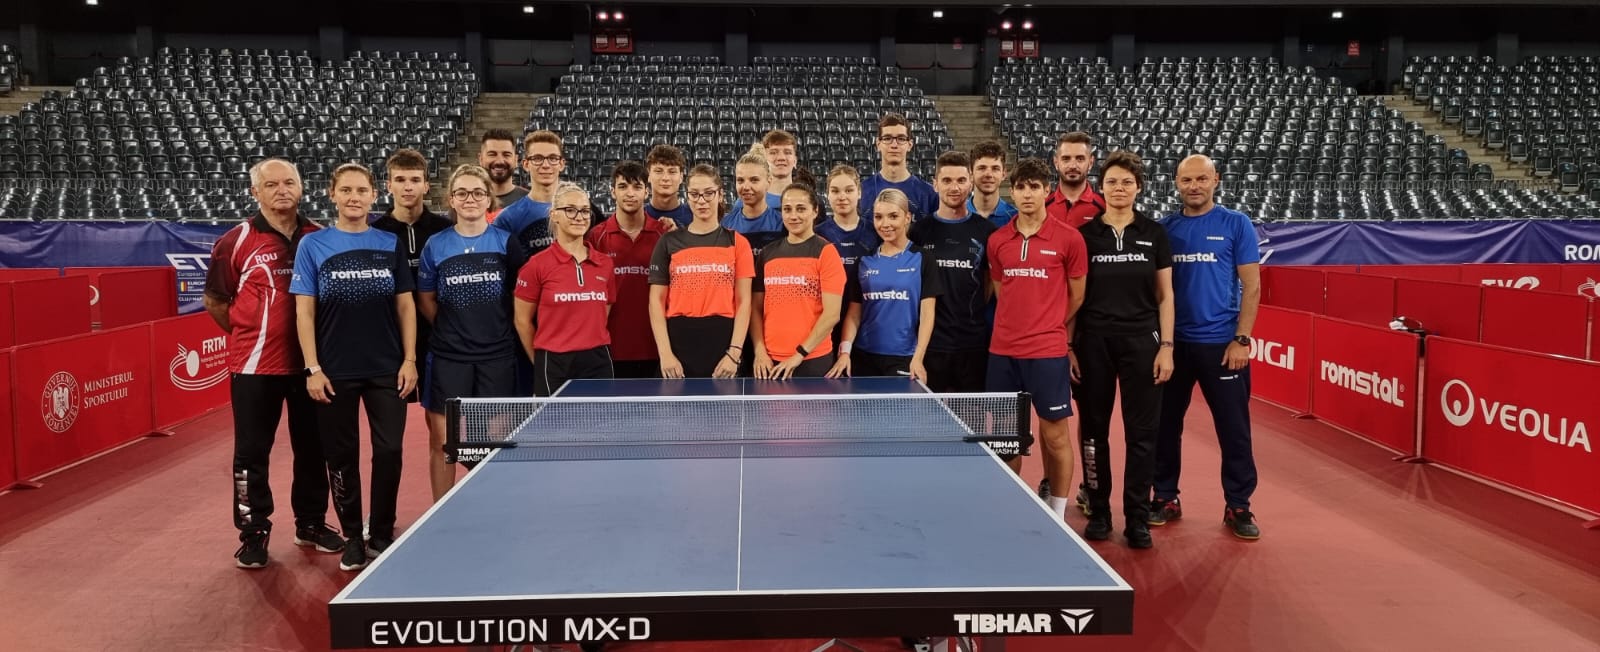 Cei mai buni tineri jucători vin la Cluj-Napoca pentru Campionatul European de Tenis de Masă U21, la BT Arena! Au fost anunțate loturile naționale